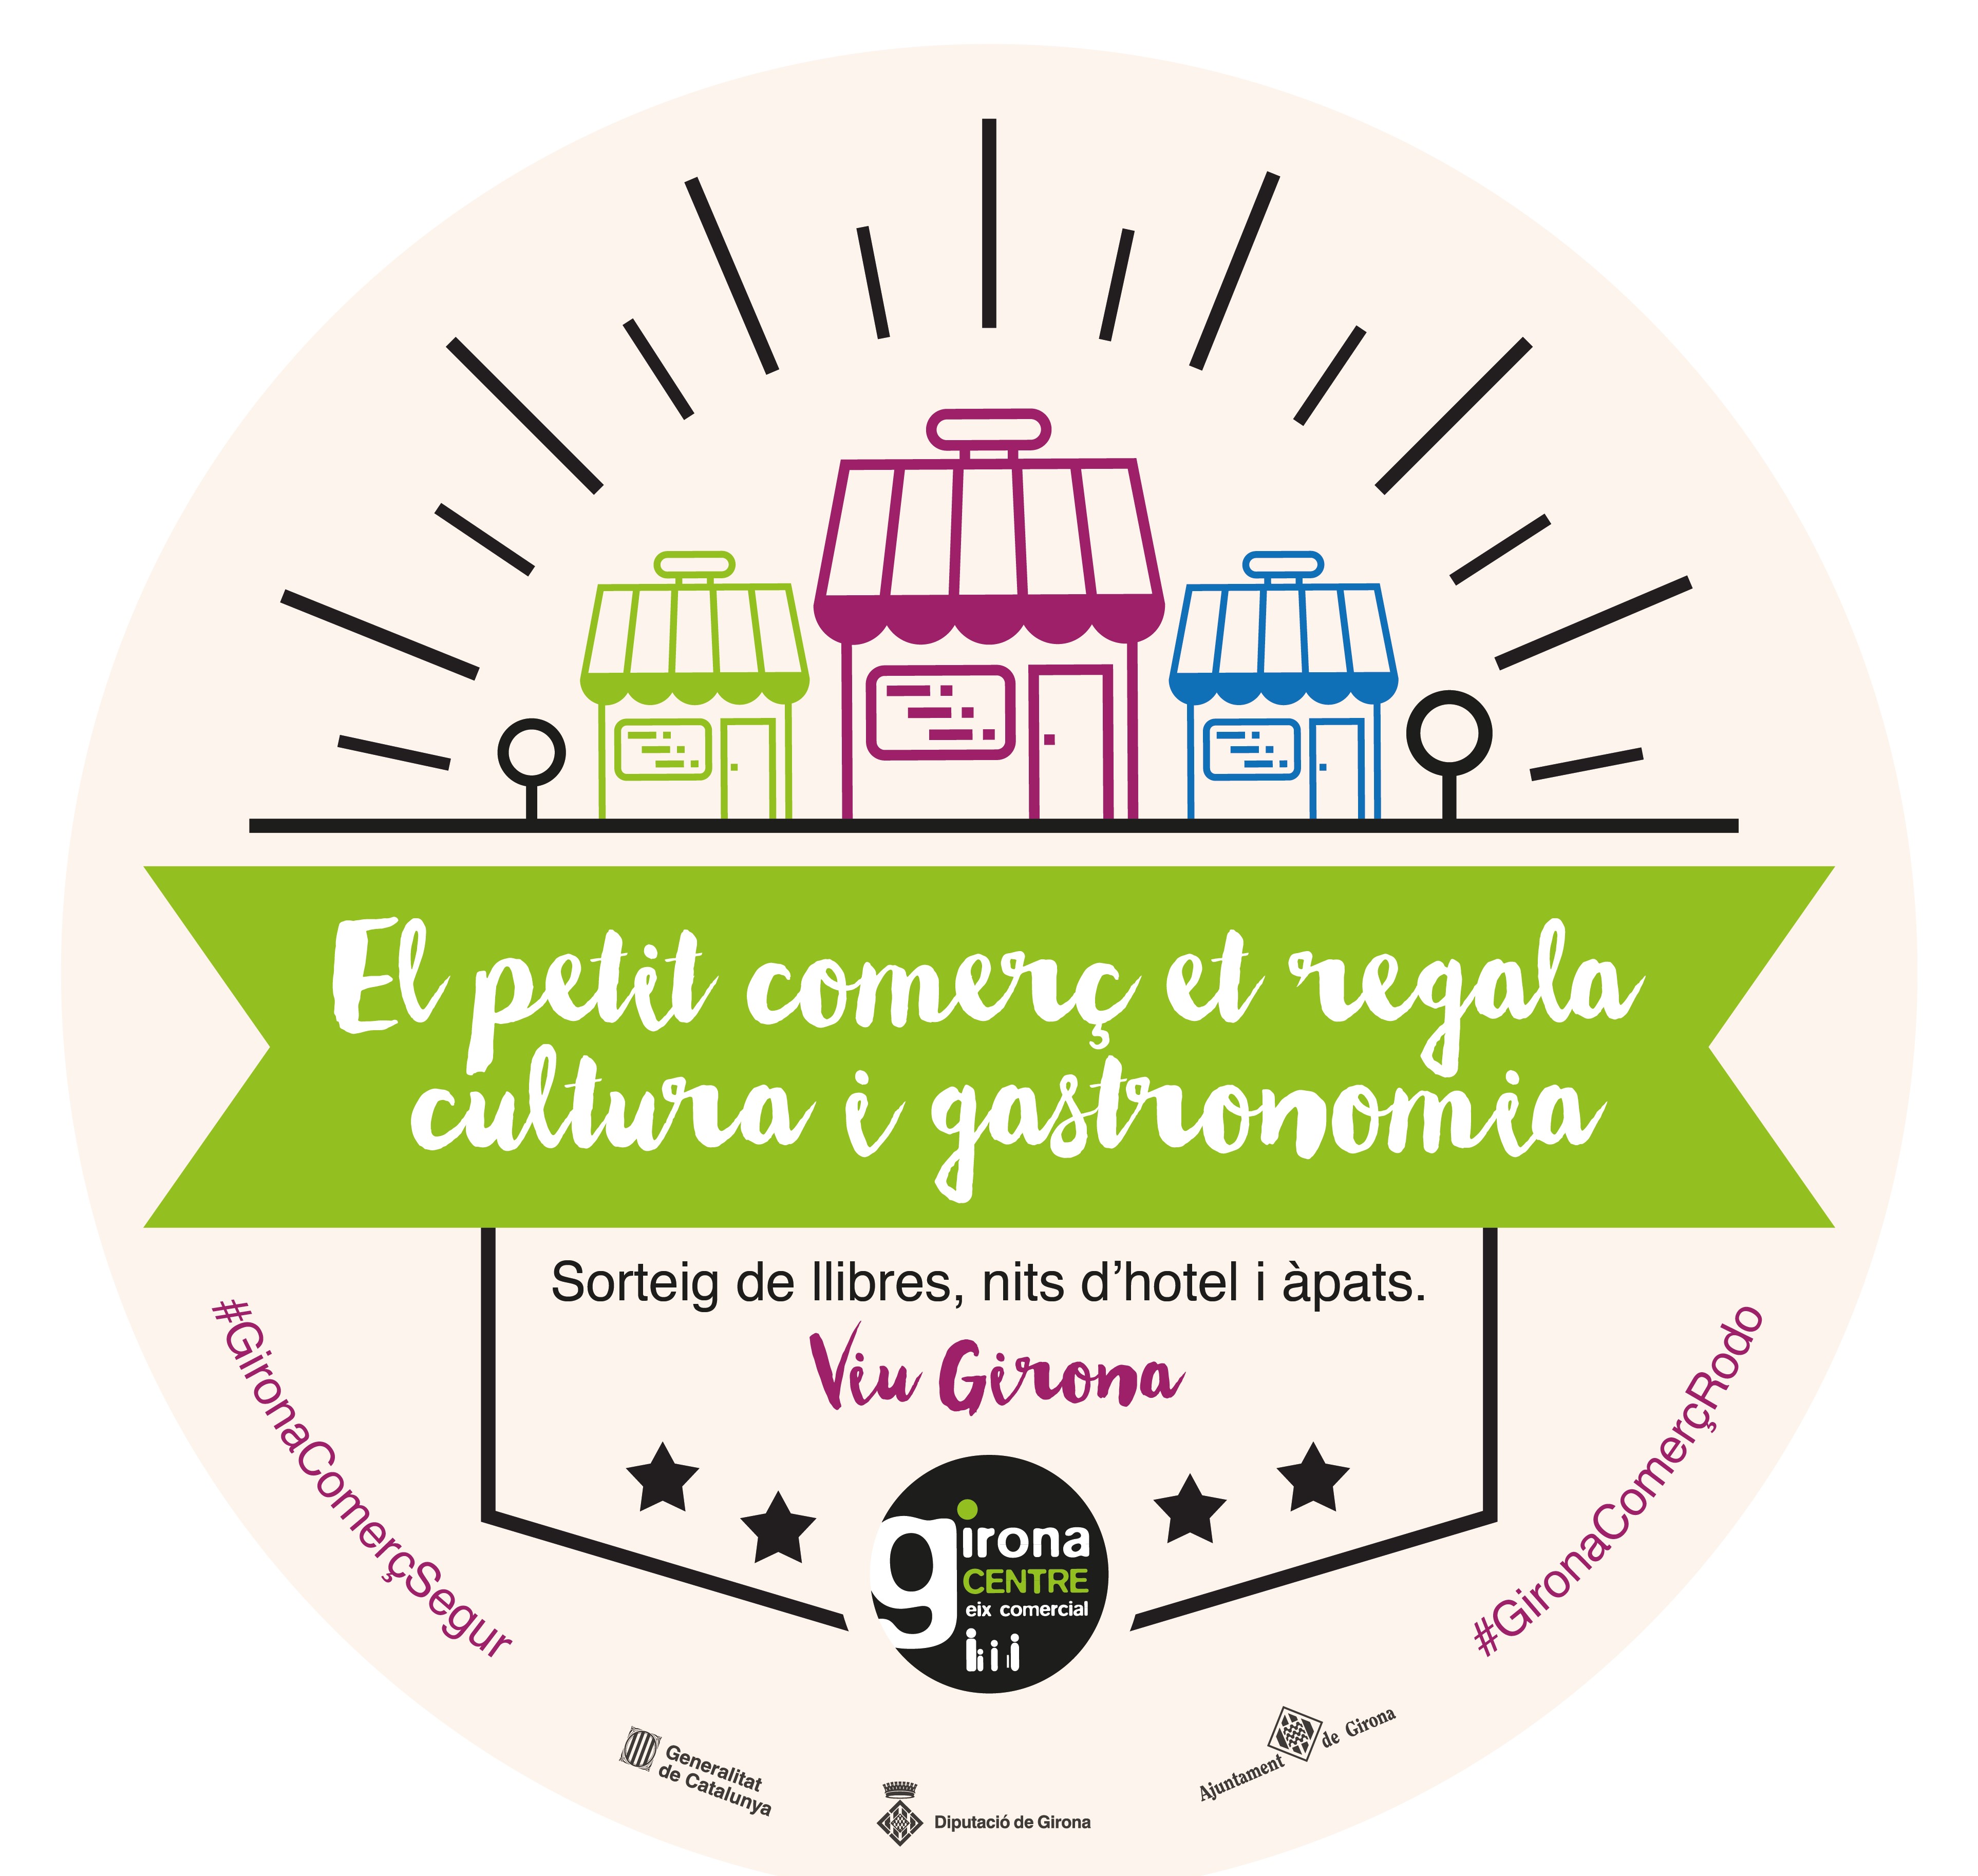 Girona Centre promou la cultura i la gastronomia de la ciutat amb una nova campanya de premis per compra